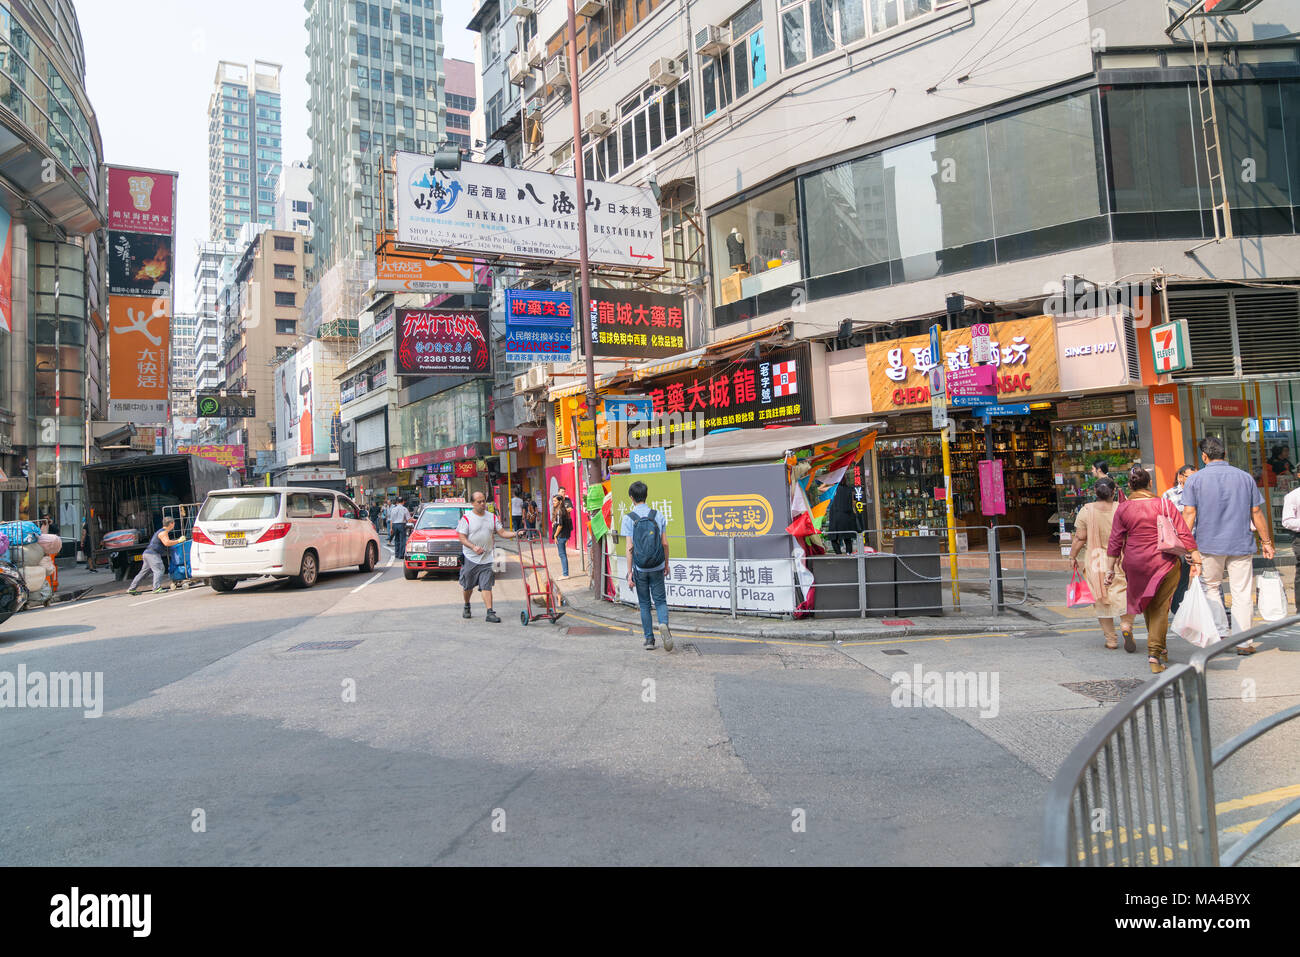 KOWLOON, HONG KONG - 18 settembre 2017; tipicamente città asiatiche scena di strada nella zona di intersezione con il traffico, le persone che attraversano, man mano con carrello shop fro Foto Stock